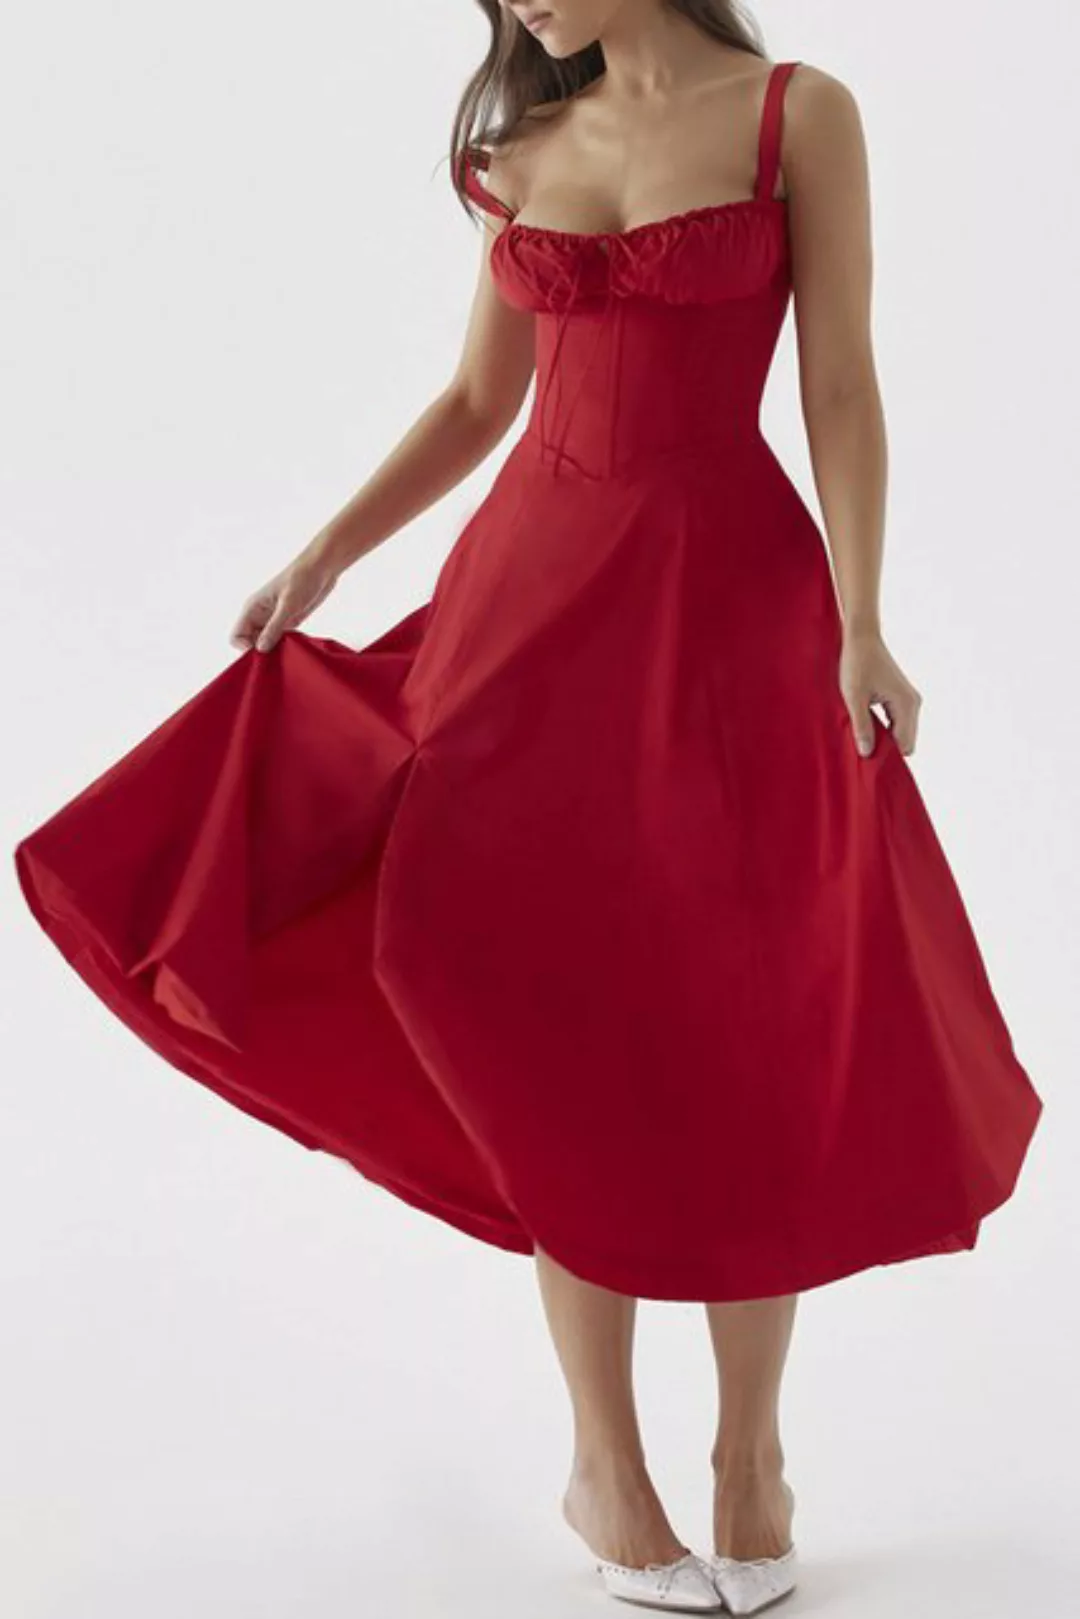 JDMGZSR Spaghettikleid Damen Sommerkleid sexy Strapskleid, A-Linien-Kleid, günstig online kaufen